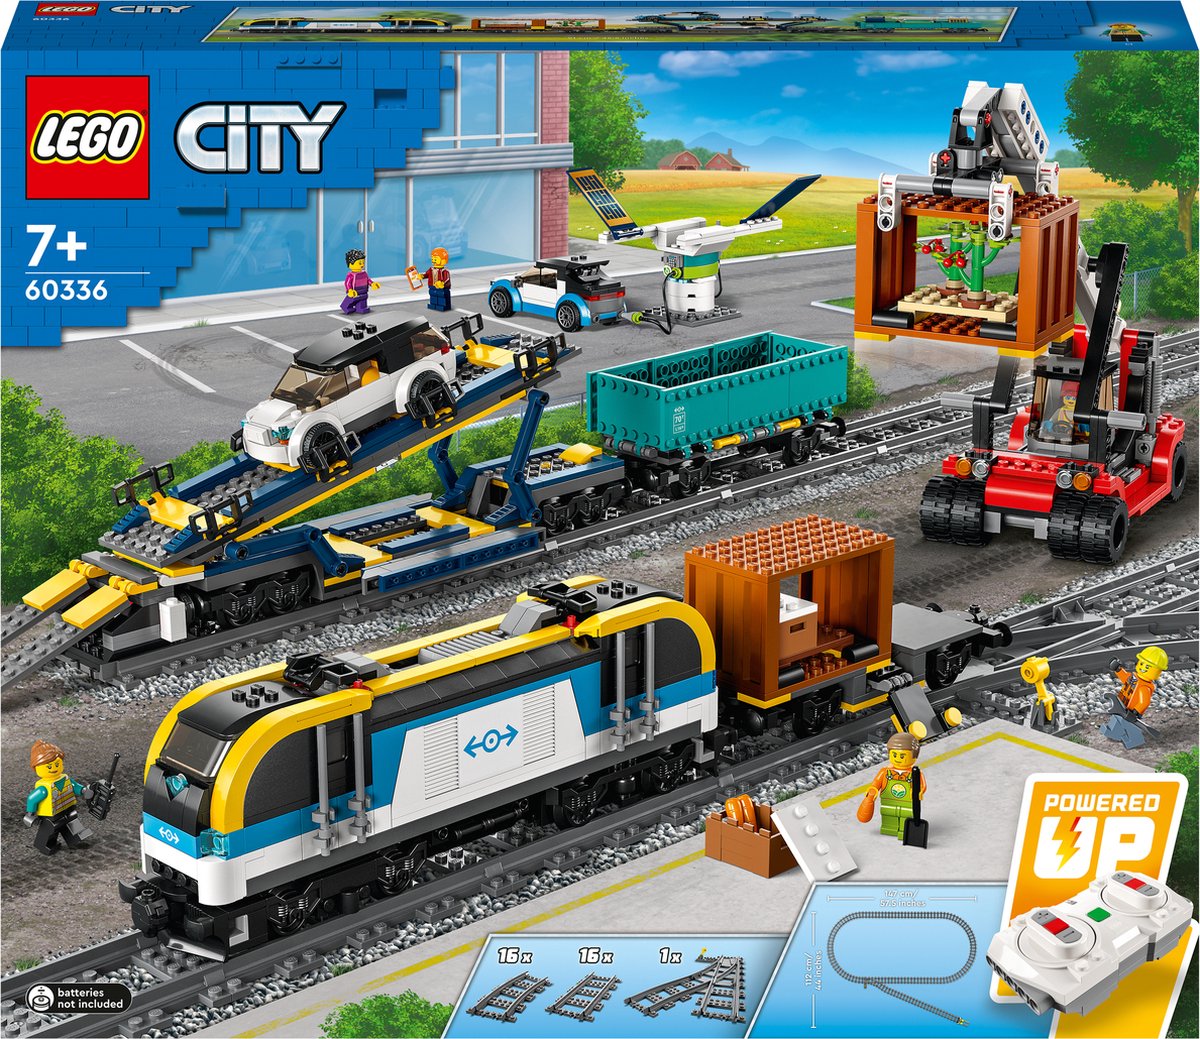 60238 - LEGO® City Les aiguillages LEGO : King Jouet, Lego, briques et  blocs LEGO - Jeux de construction